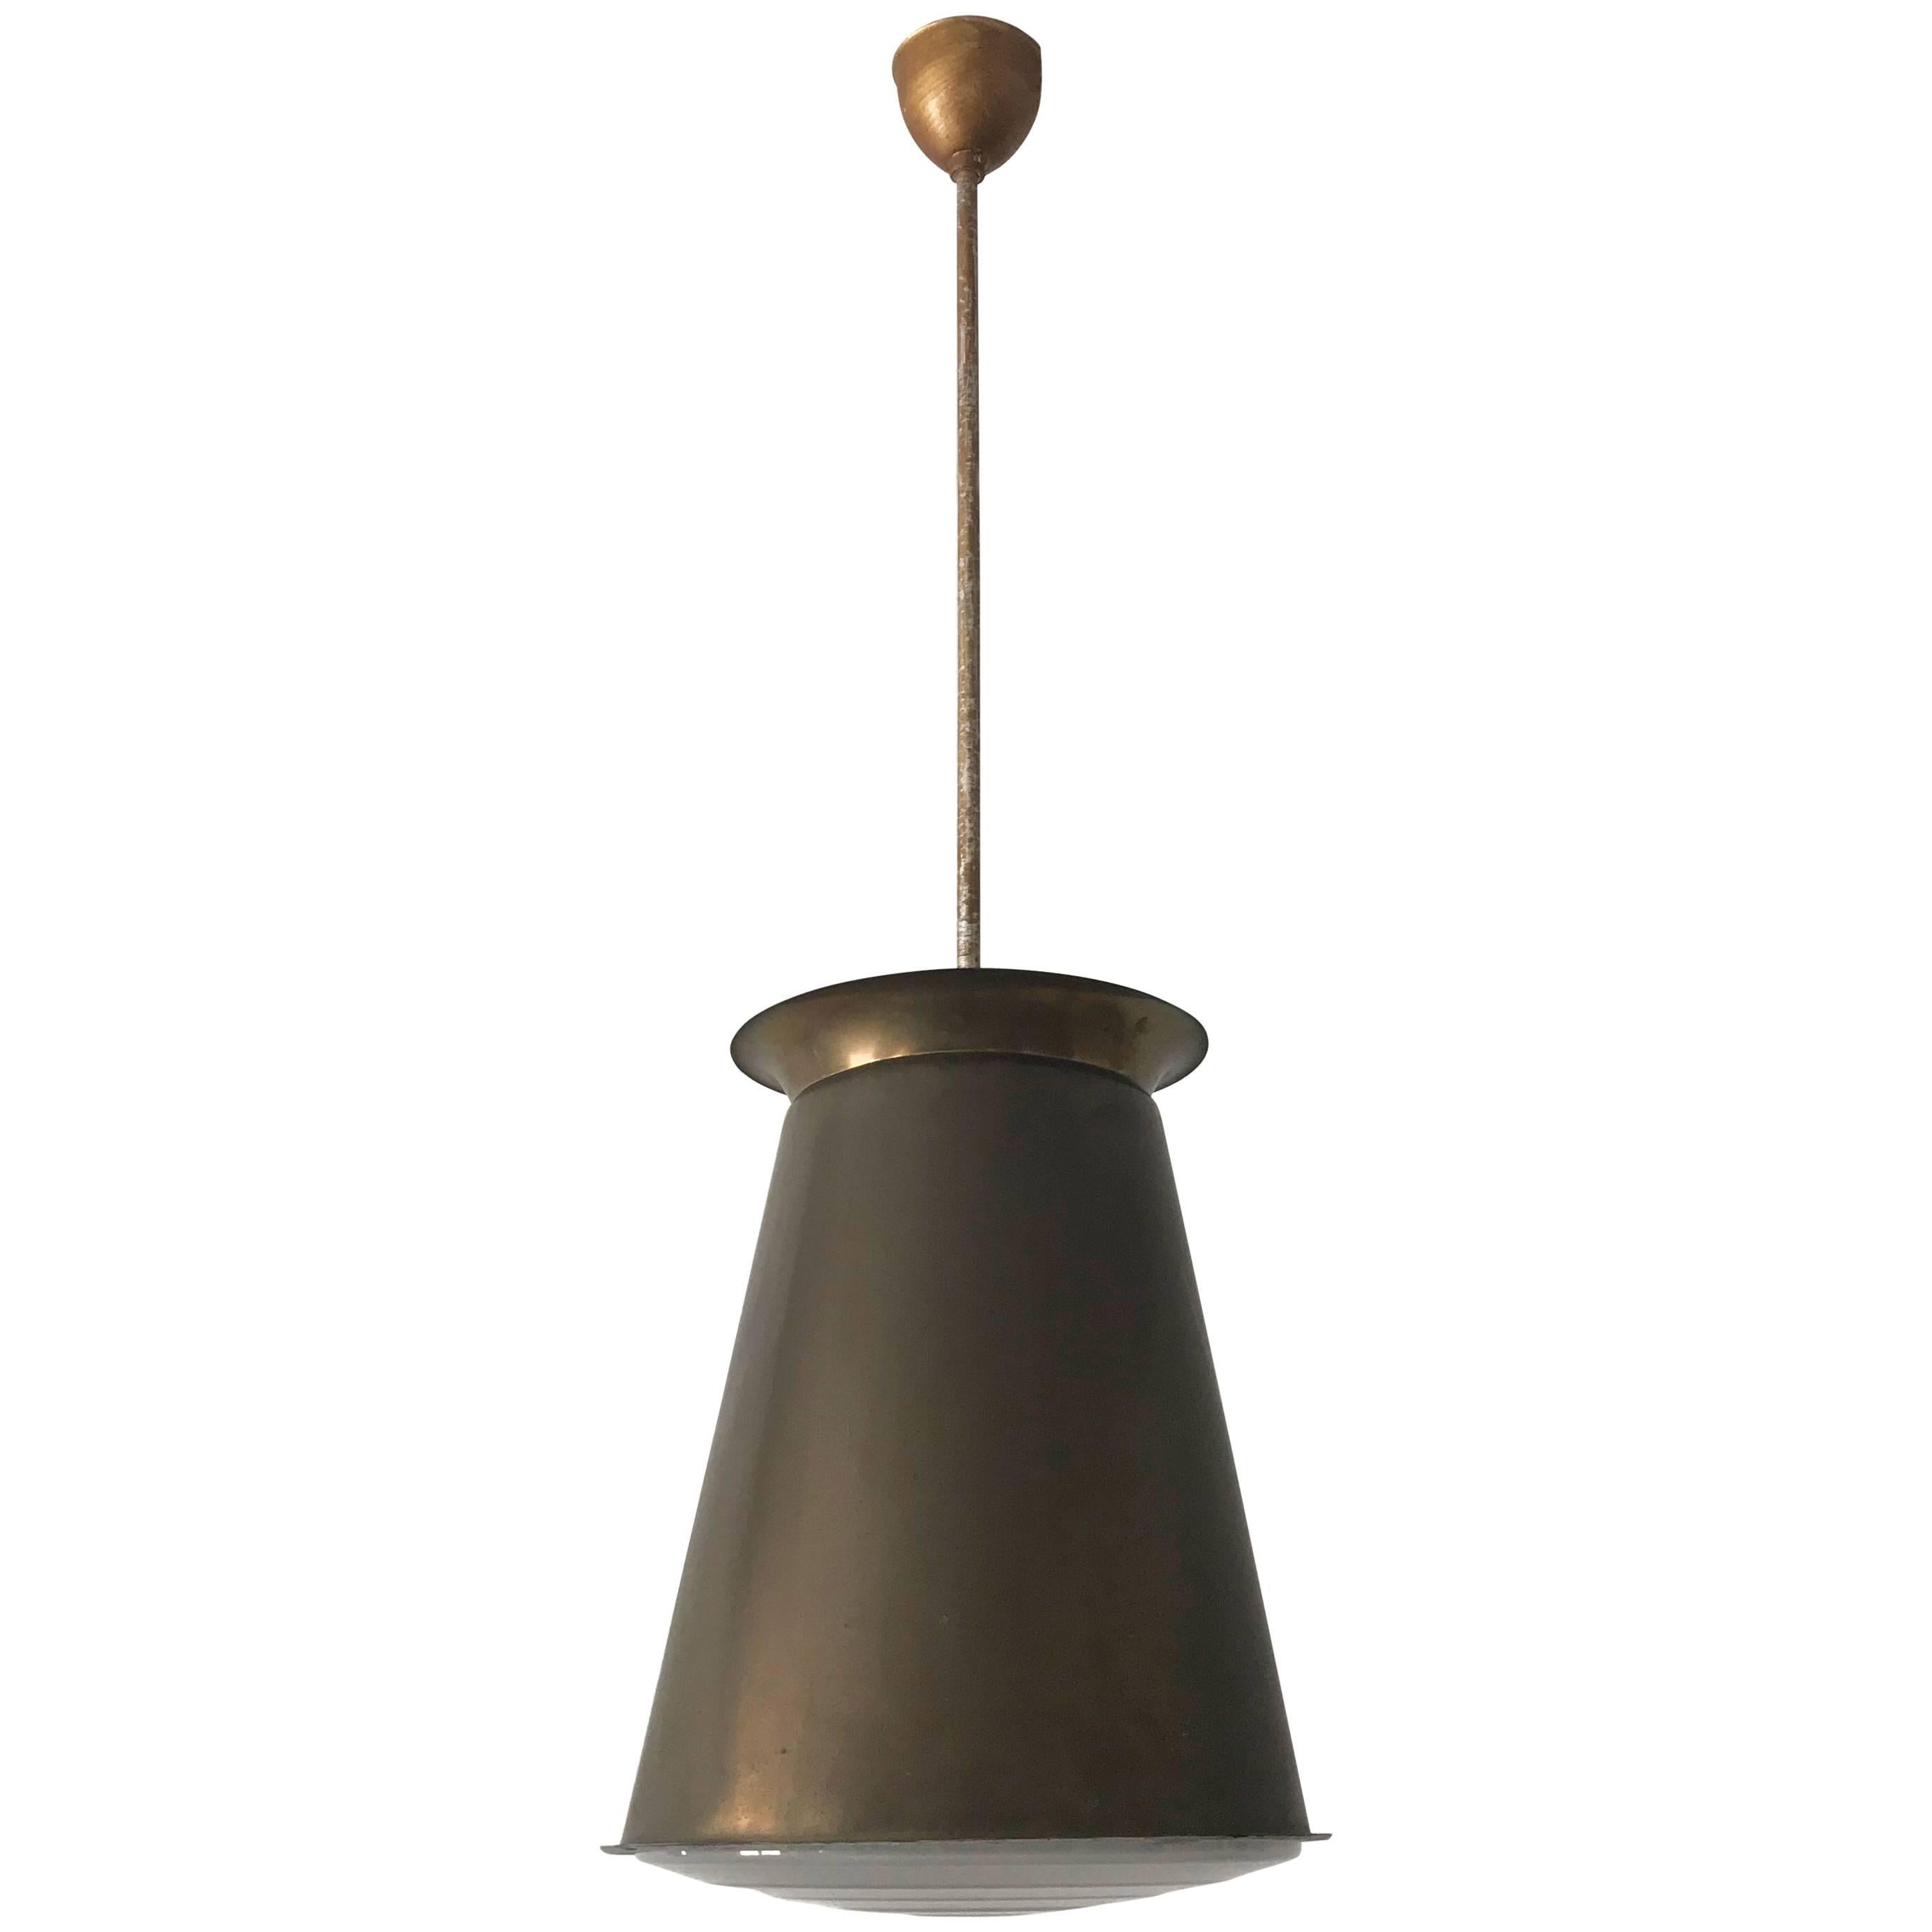 Exceptionnelle lampe suspendue Bauhaus d'Adolf Meyer pour Zeiss Ikon, années 1930, Allemagne